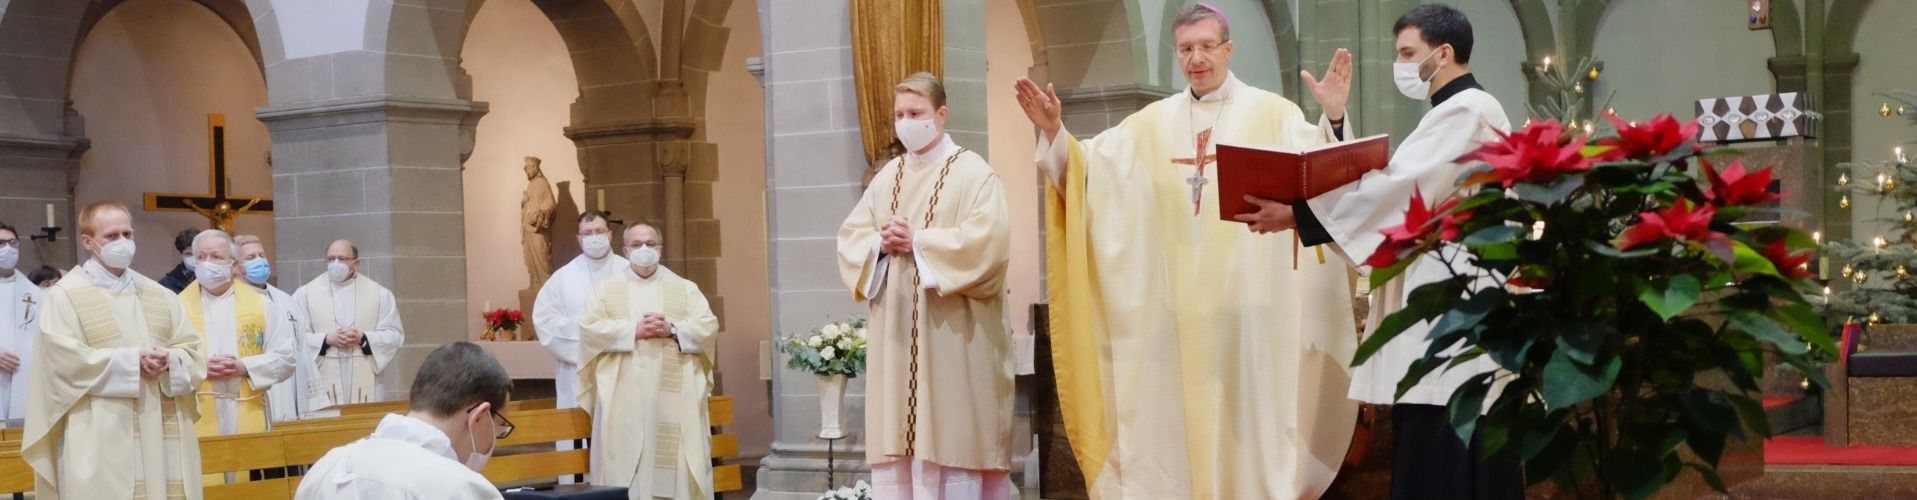 Bischof Gerber weiht André Kulla zum Priester